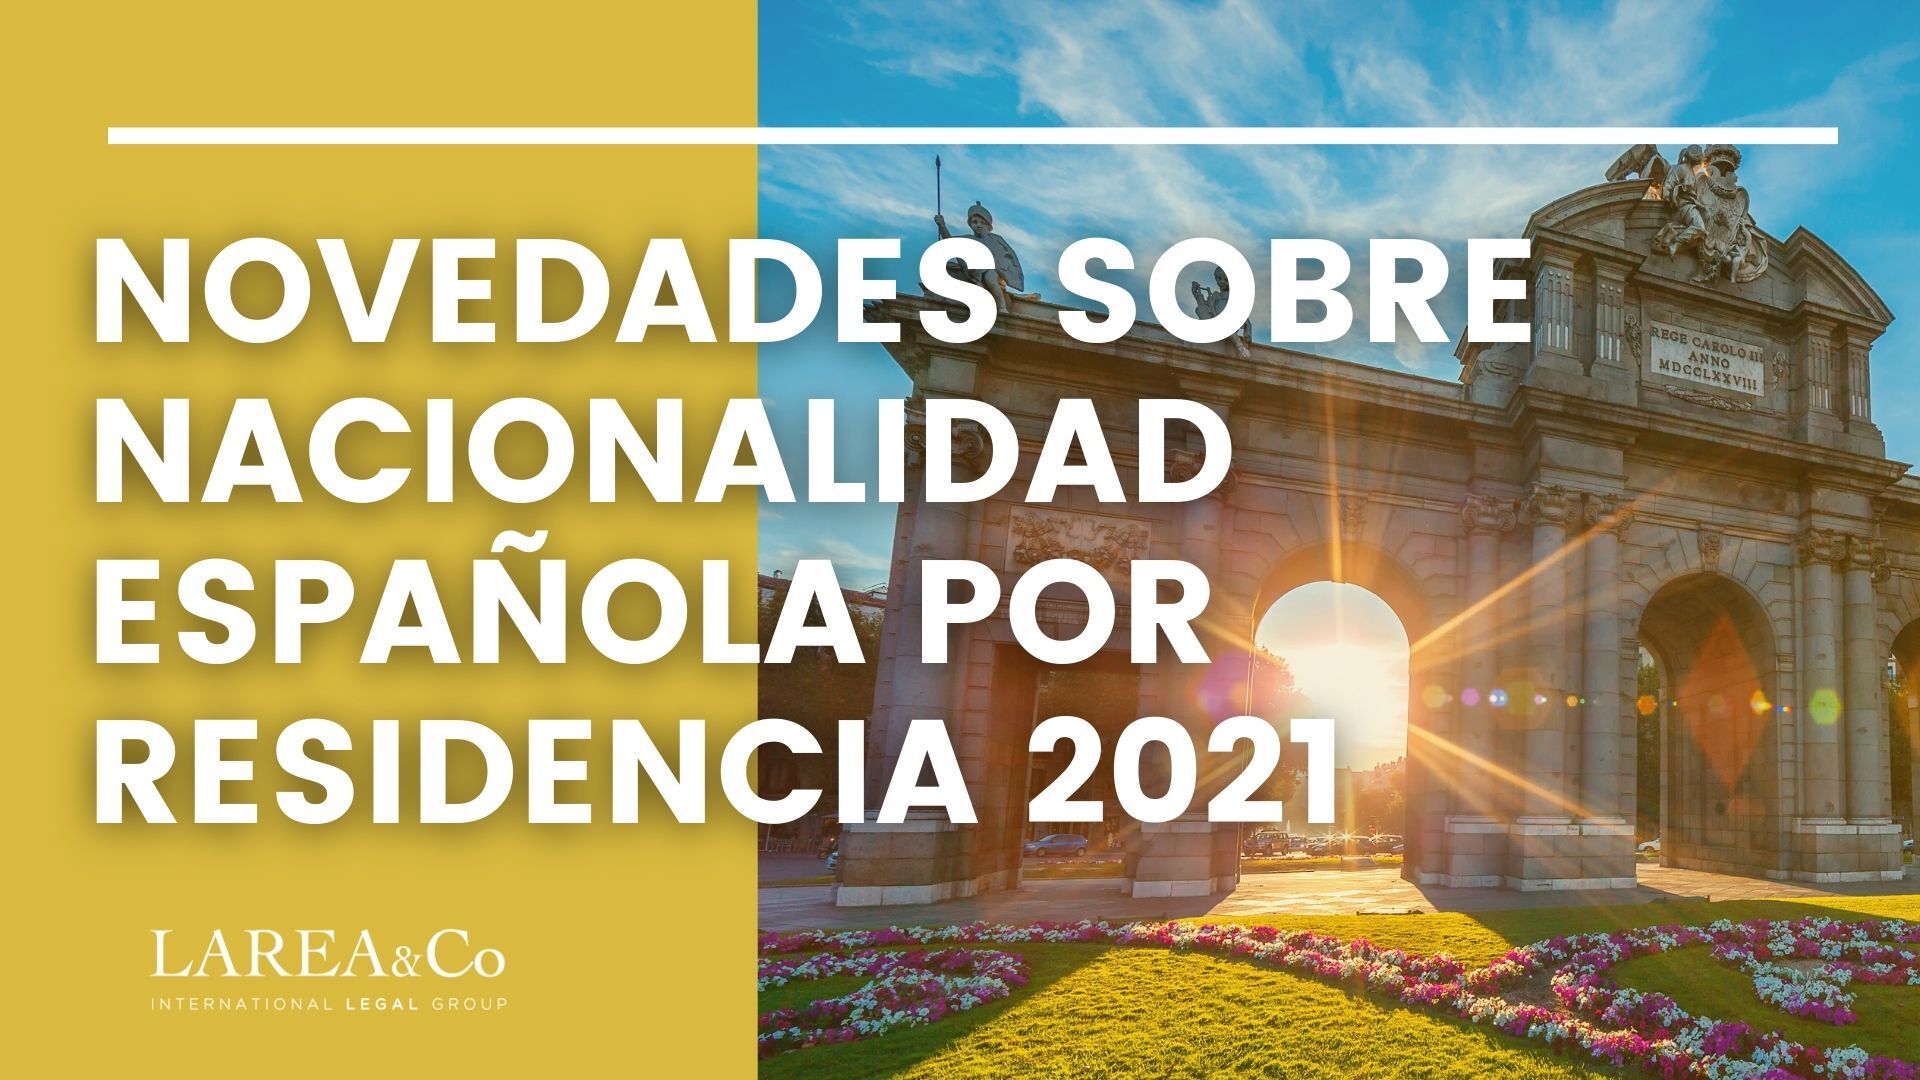 Novedades sobre nacionalidad española por residencia 2021